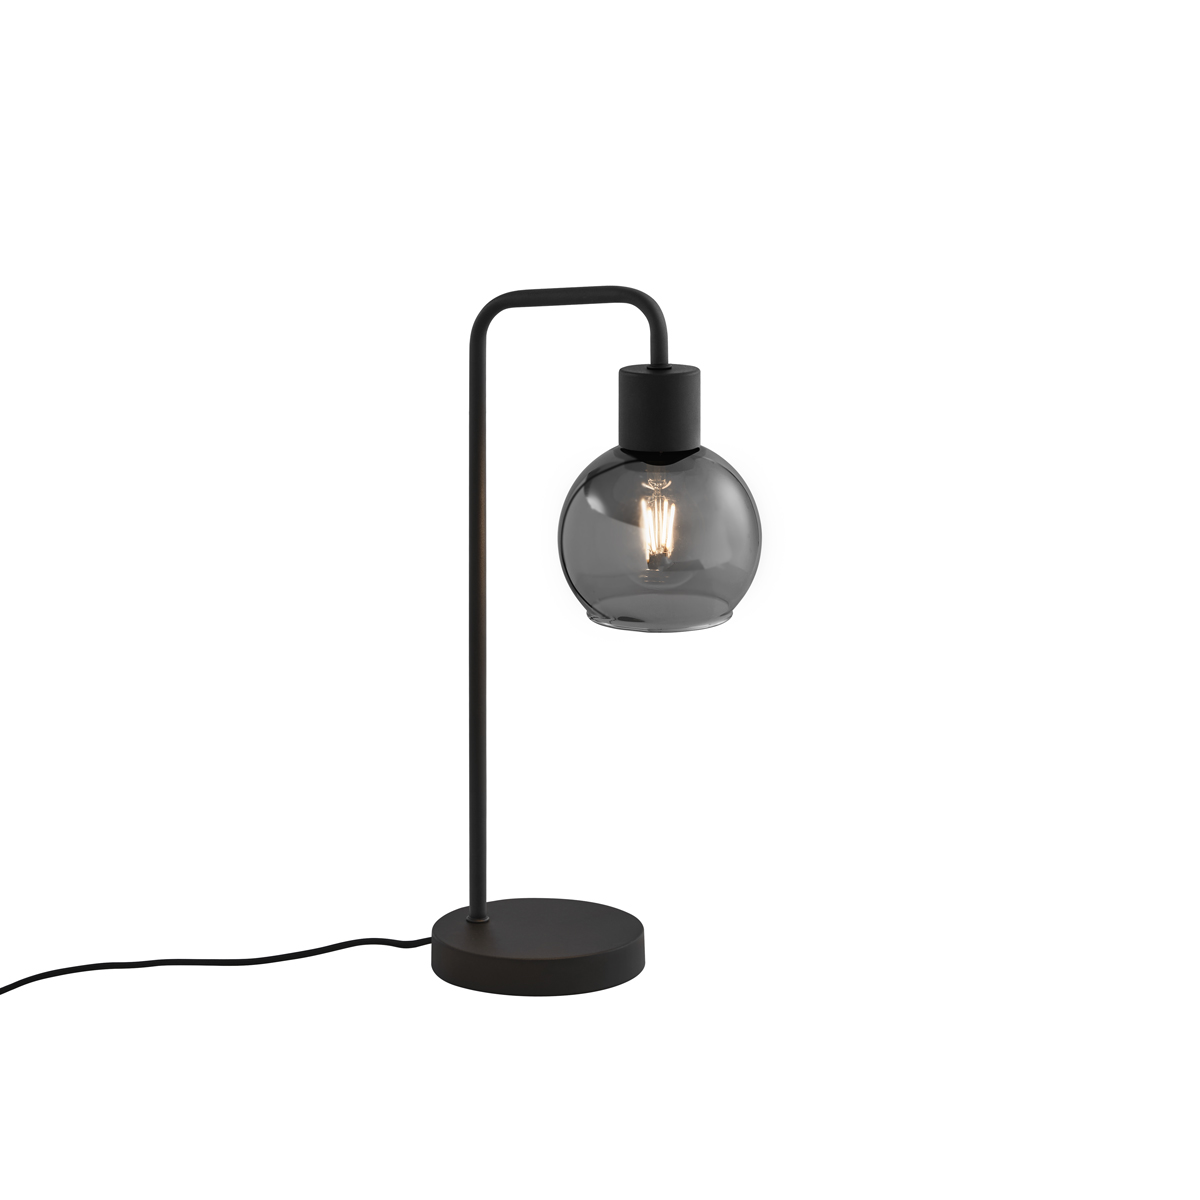 Art deco asztali lámpa fekete füstüveggel - Vidro